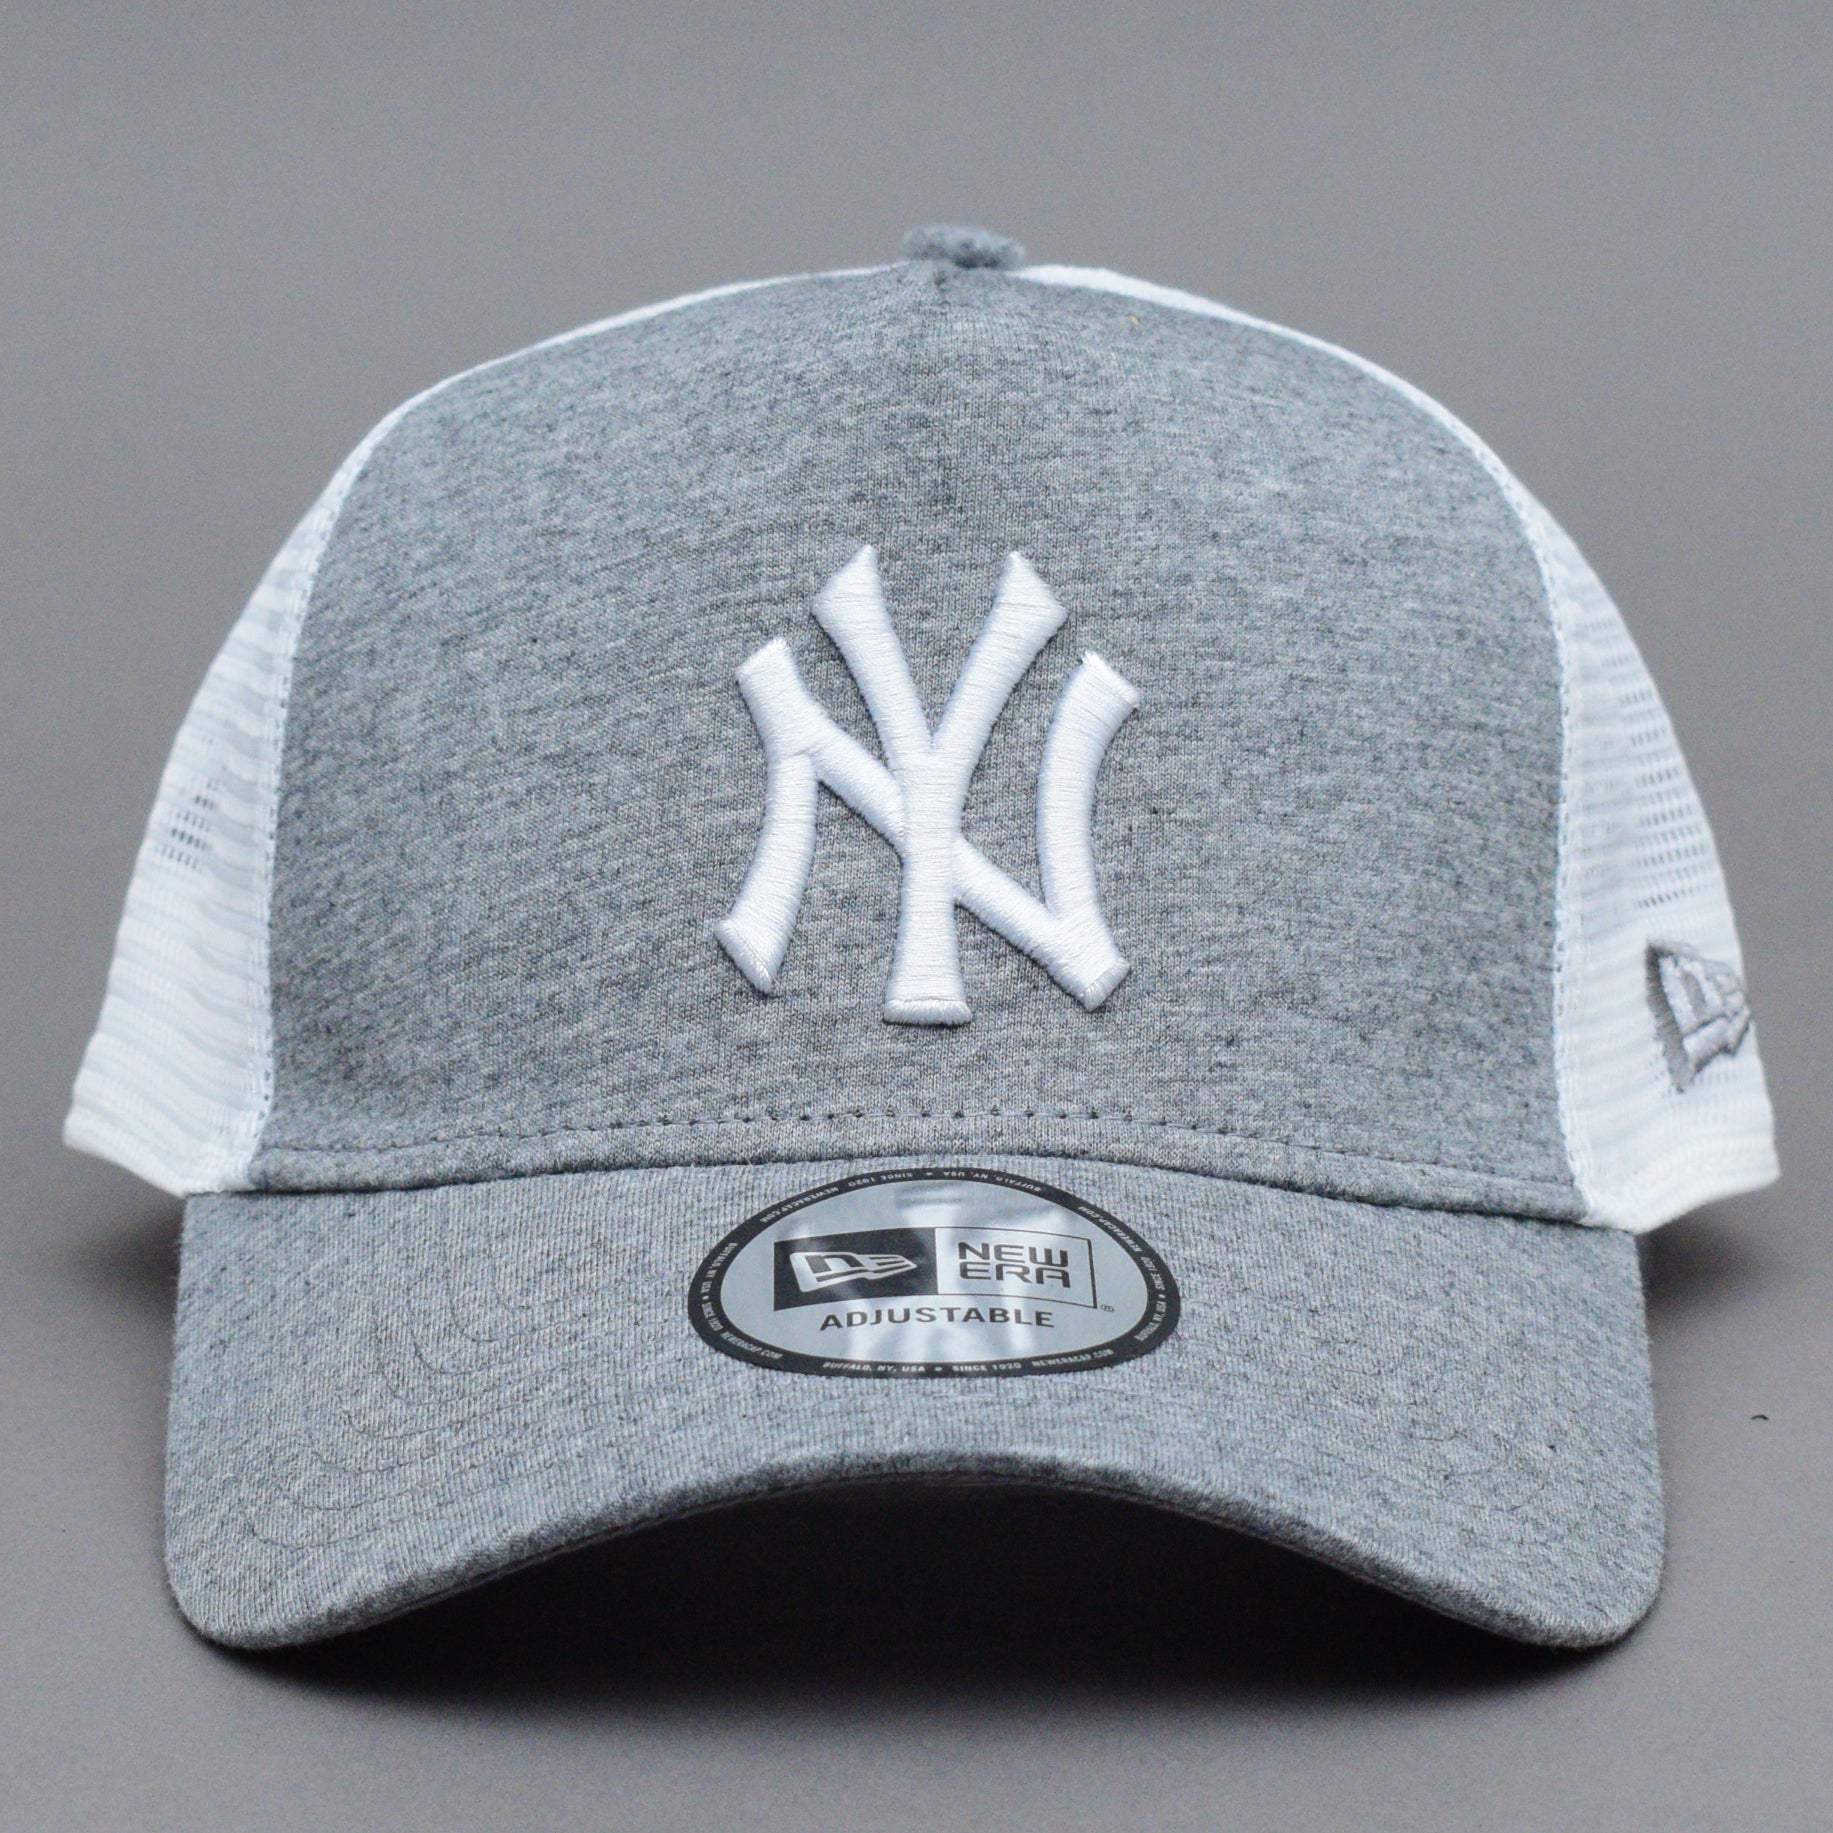 New Era - NY Yankees A Frame Jersey - Trucker/Snapback - Dark Grey/White